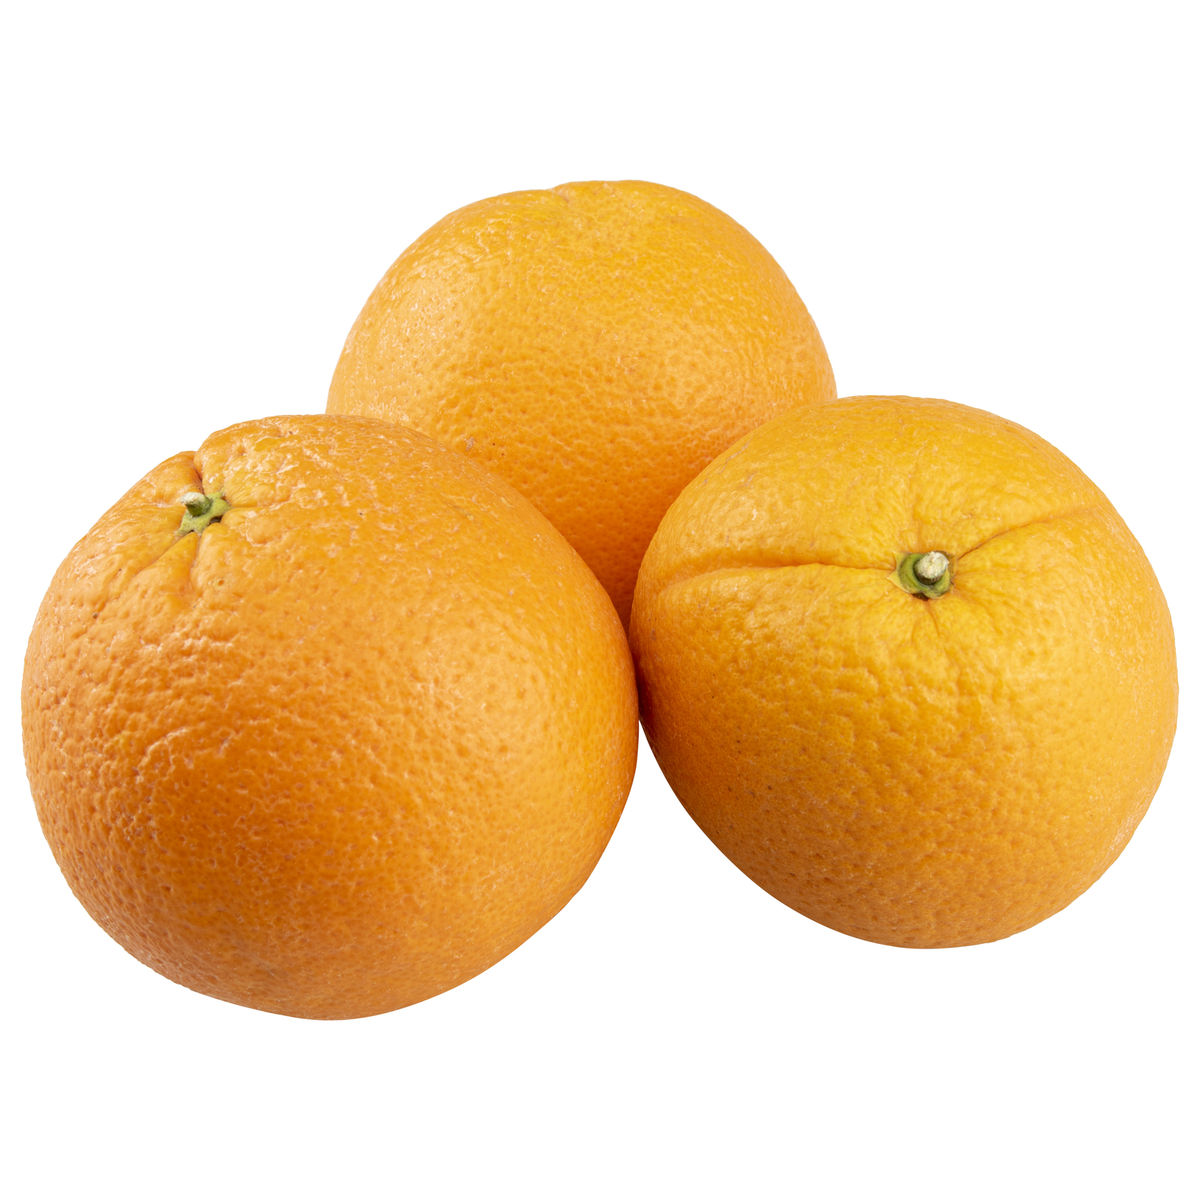 Carrefour Oranges de Table - 3 pièces